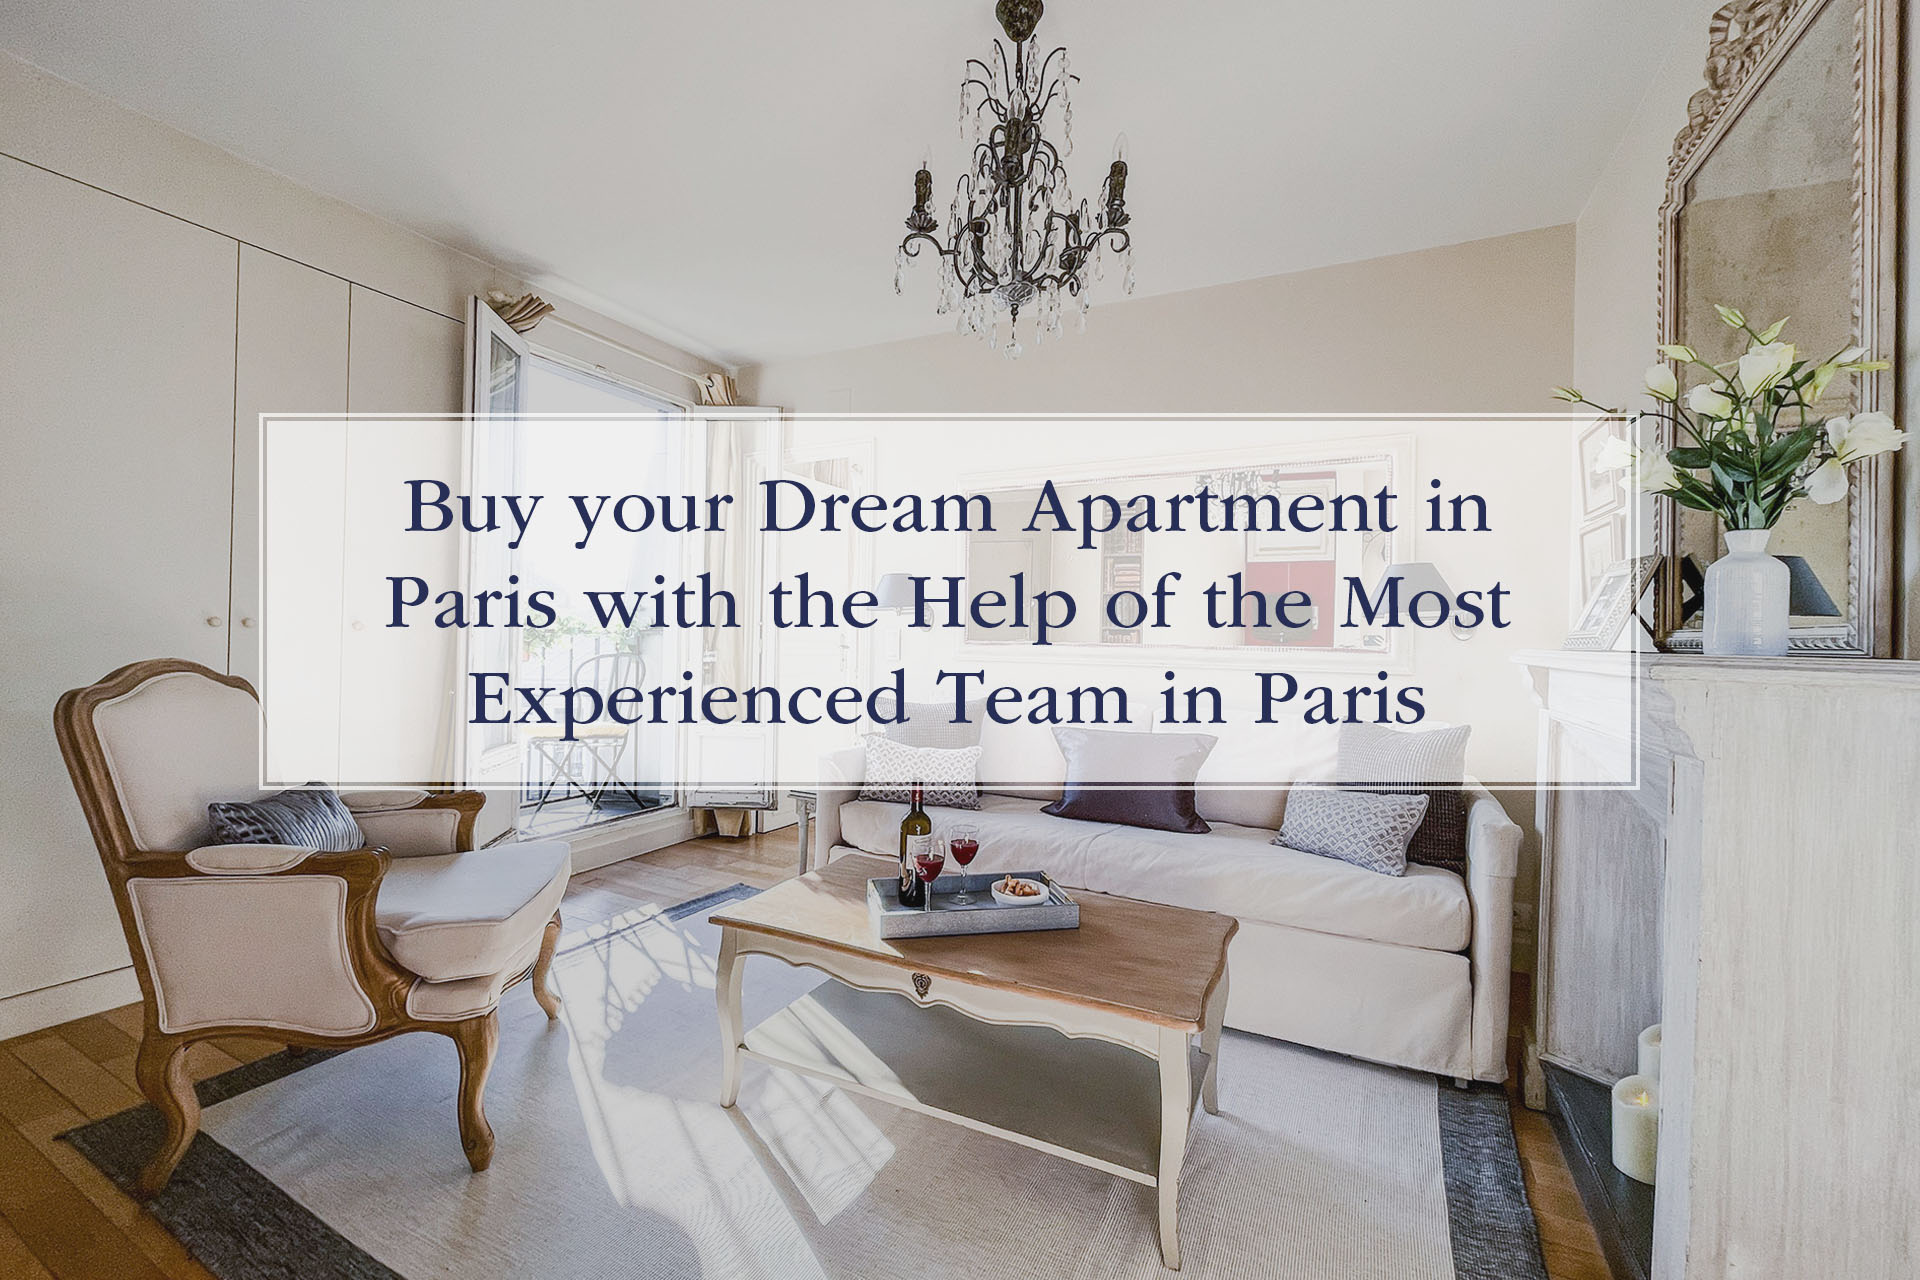 Paris Apartments for Sale